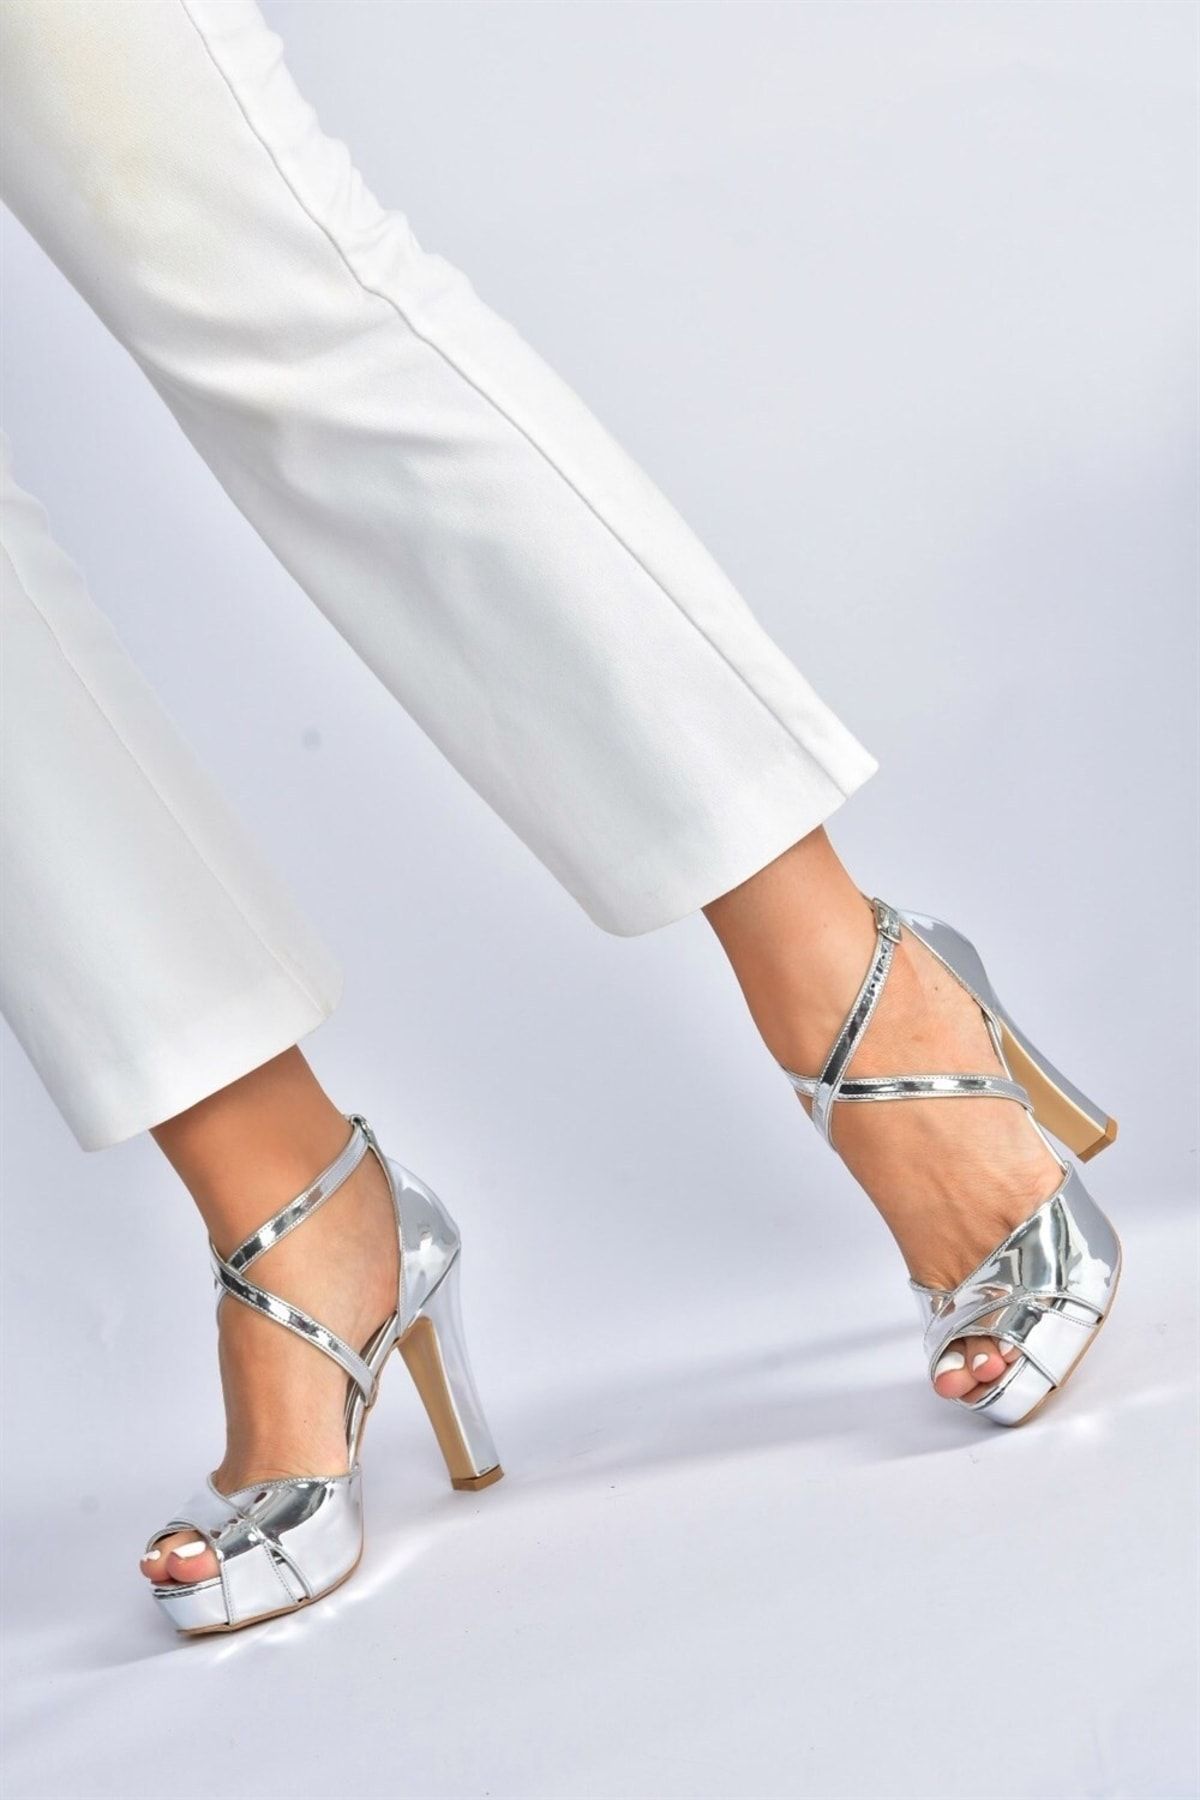 Fox Shoes Gümüş Ayna Platform Kalın Topuklu Kadın Abiye Ayakkabı M348010234